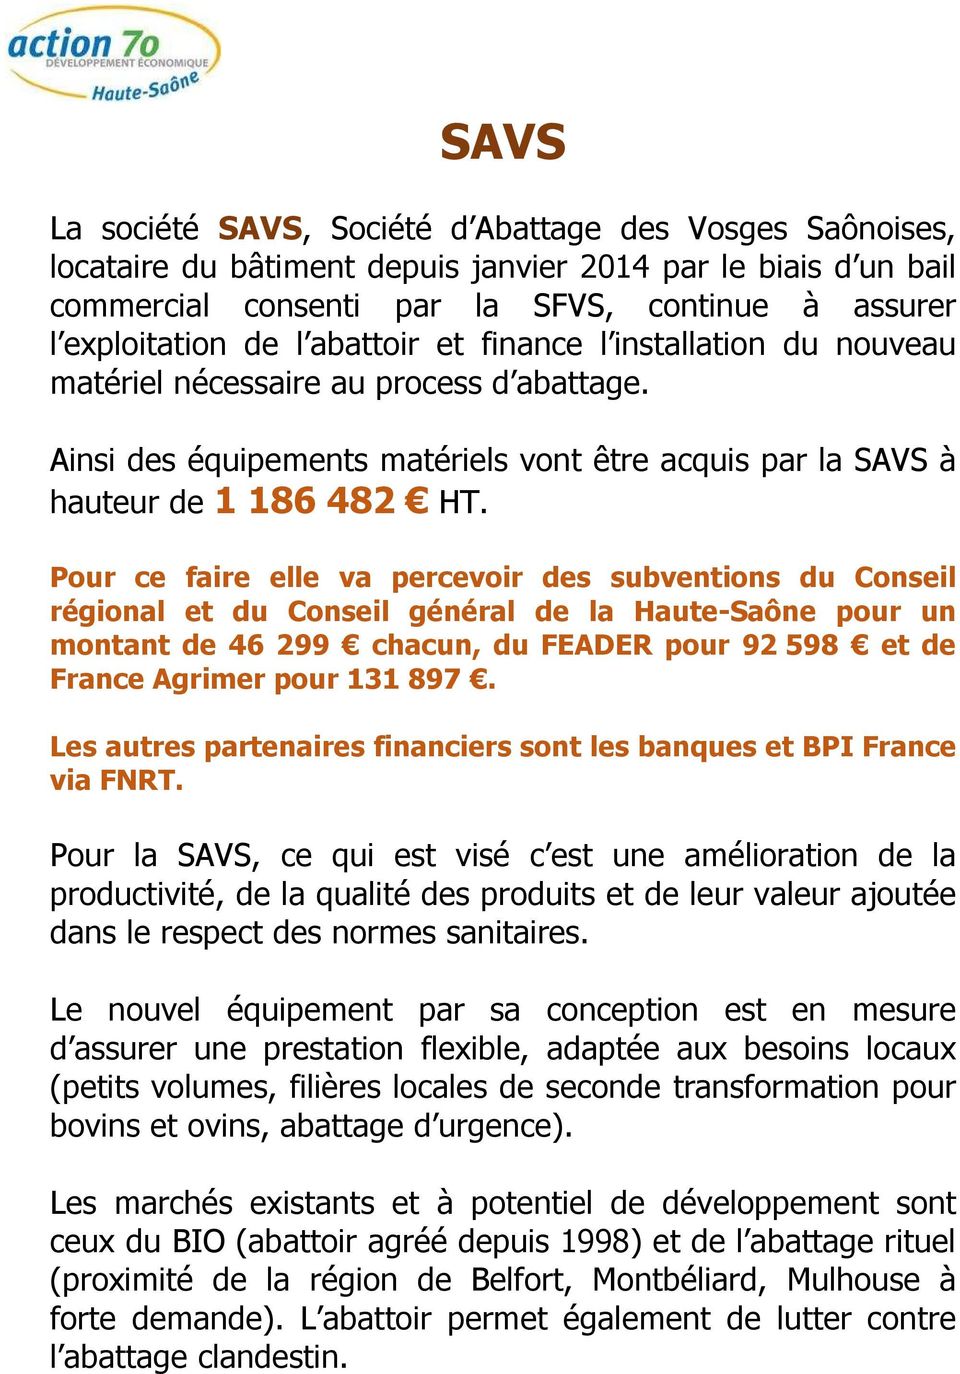 Pour ce faire elle va percevoir des subventions du Conseil régional et du Conseil général de la Haute-Saône pour un montant de 46 299 chacun, du FEADER pour 92 598 et de France Agrimer pour 131 897.